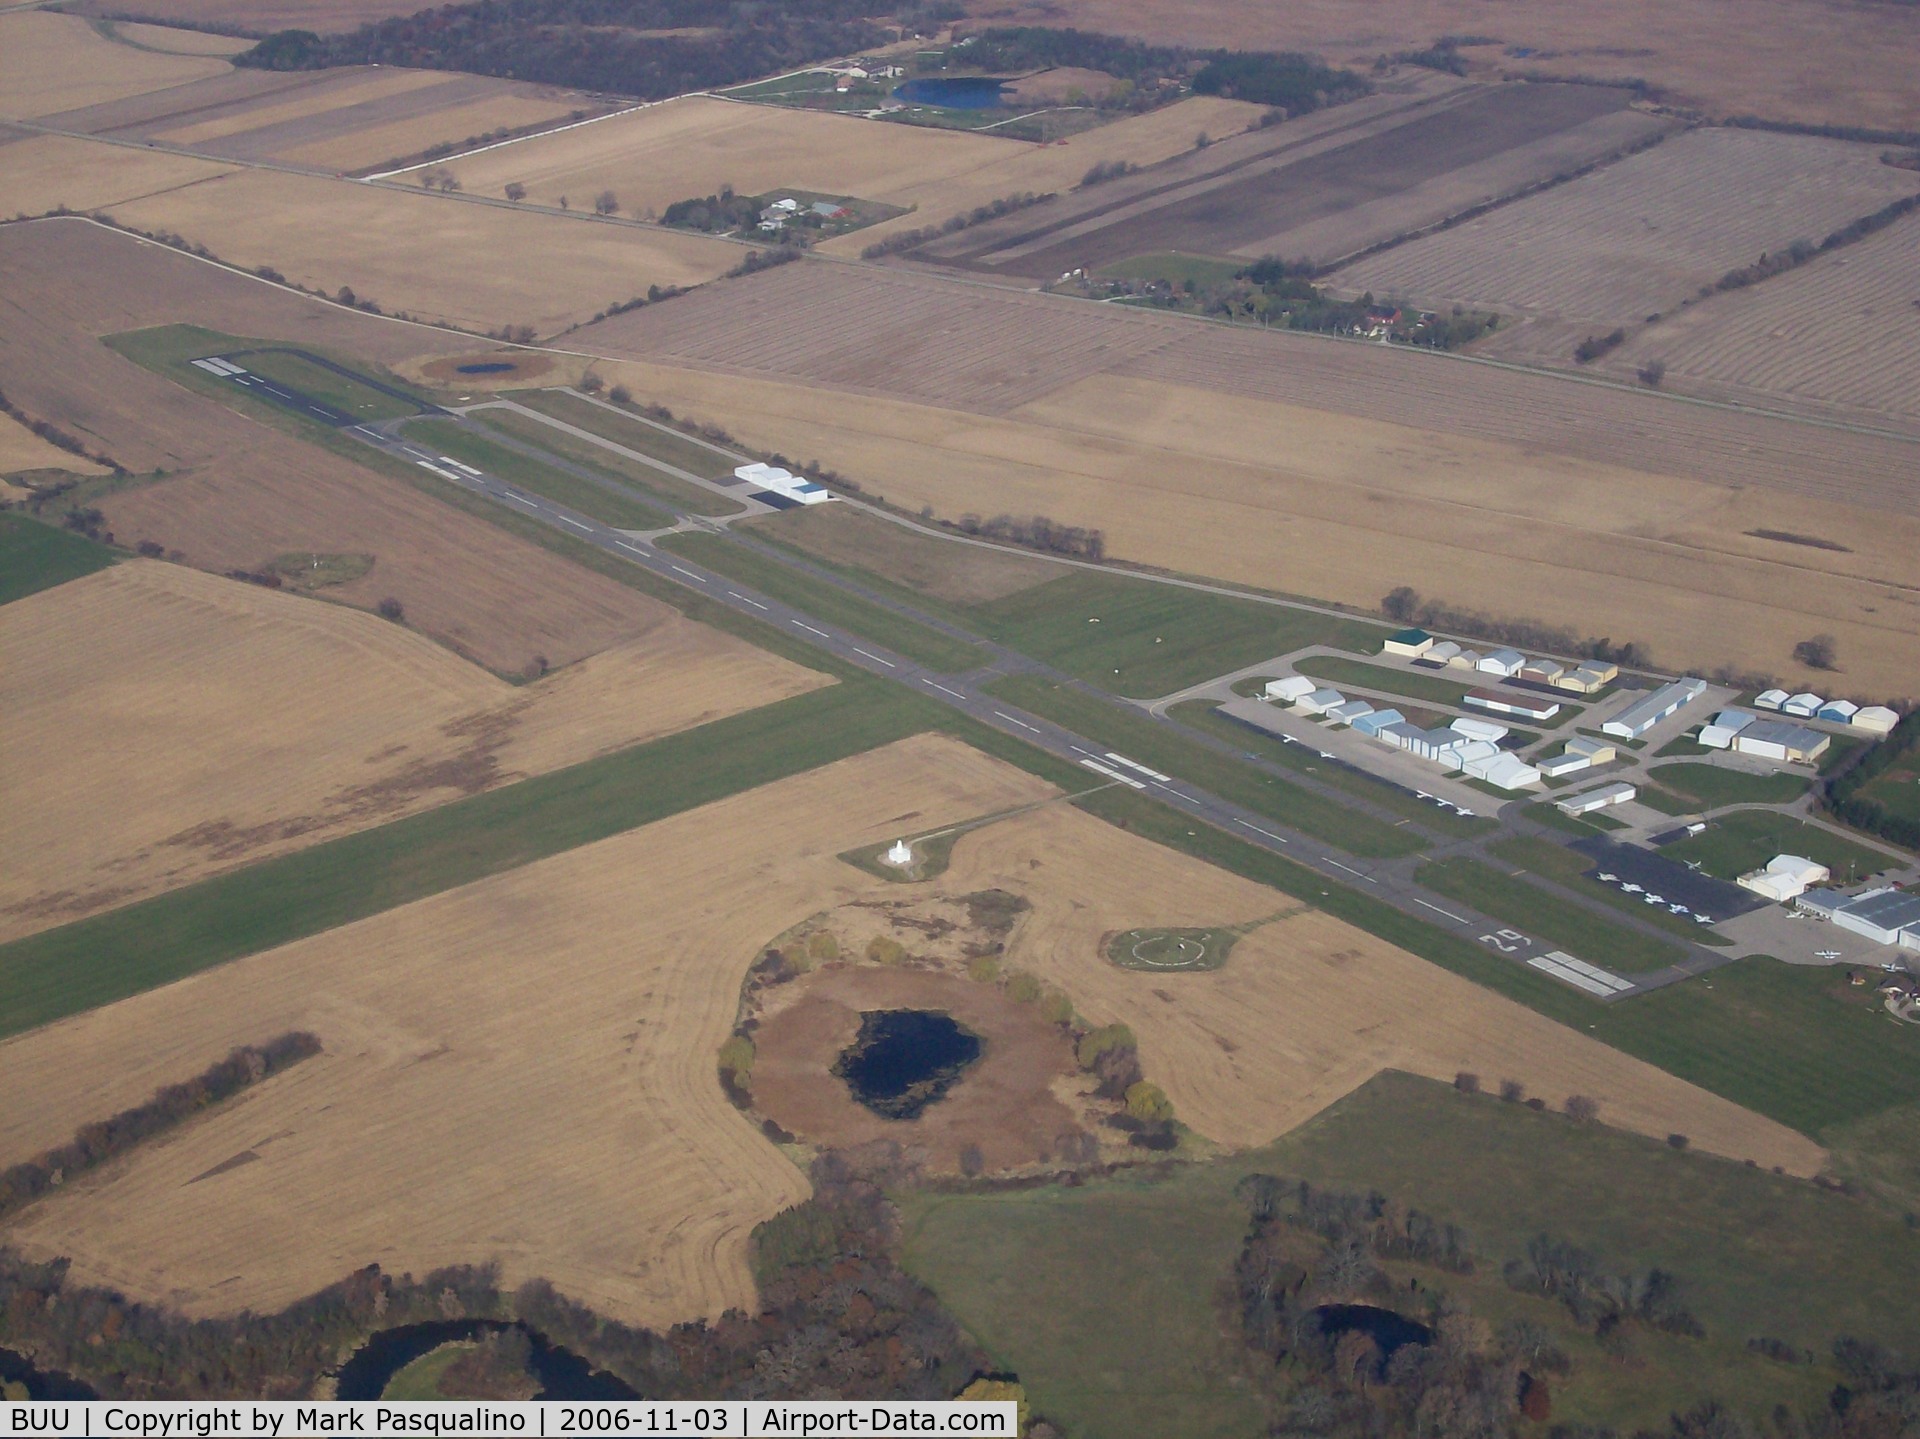 Burlington Municipal Airport (BUU) - Burlington, WI